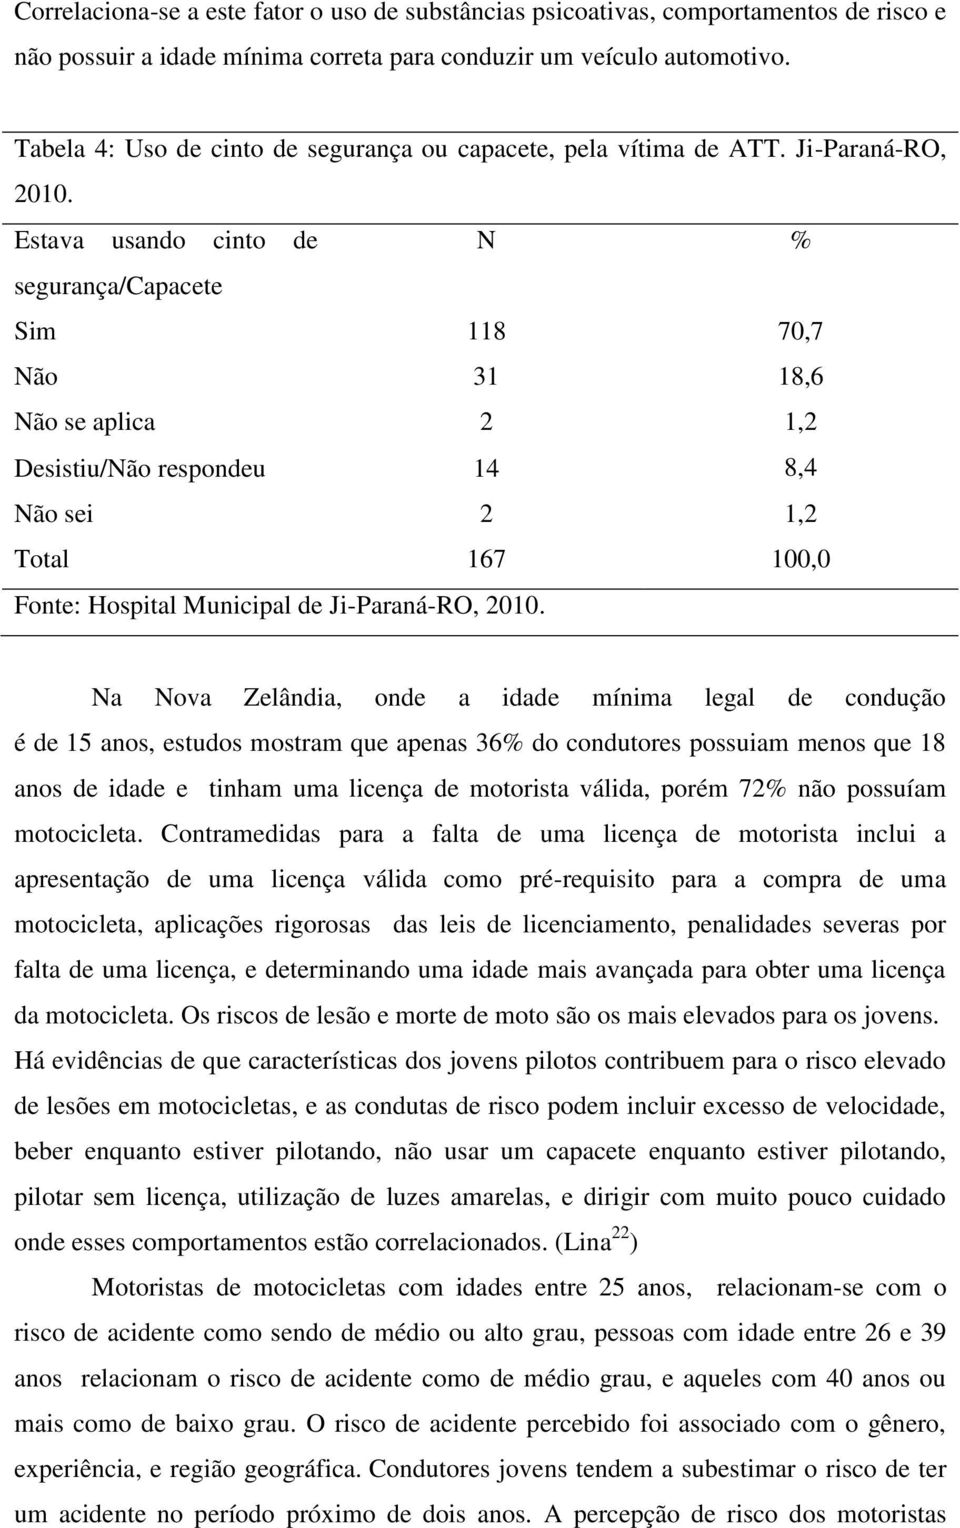 Estava usando cinto de N % segurança/capacete Sim 118 70,7 Não 31 18,6 Não se aplica 2 1,2 Desistiu/Não respondeu 14 8,4 Não sei 2 1,2 Total 167 100,0 Fonte: Hospital Municipal de Ji-Paraná-RO, 2010.